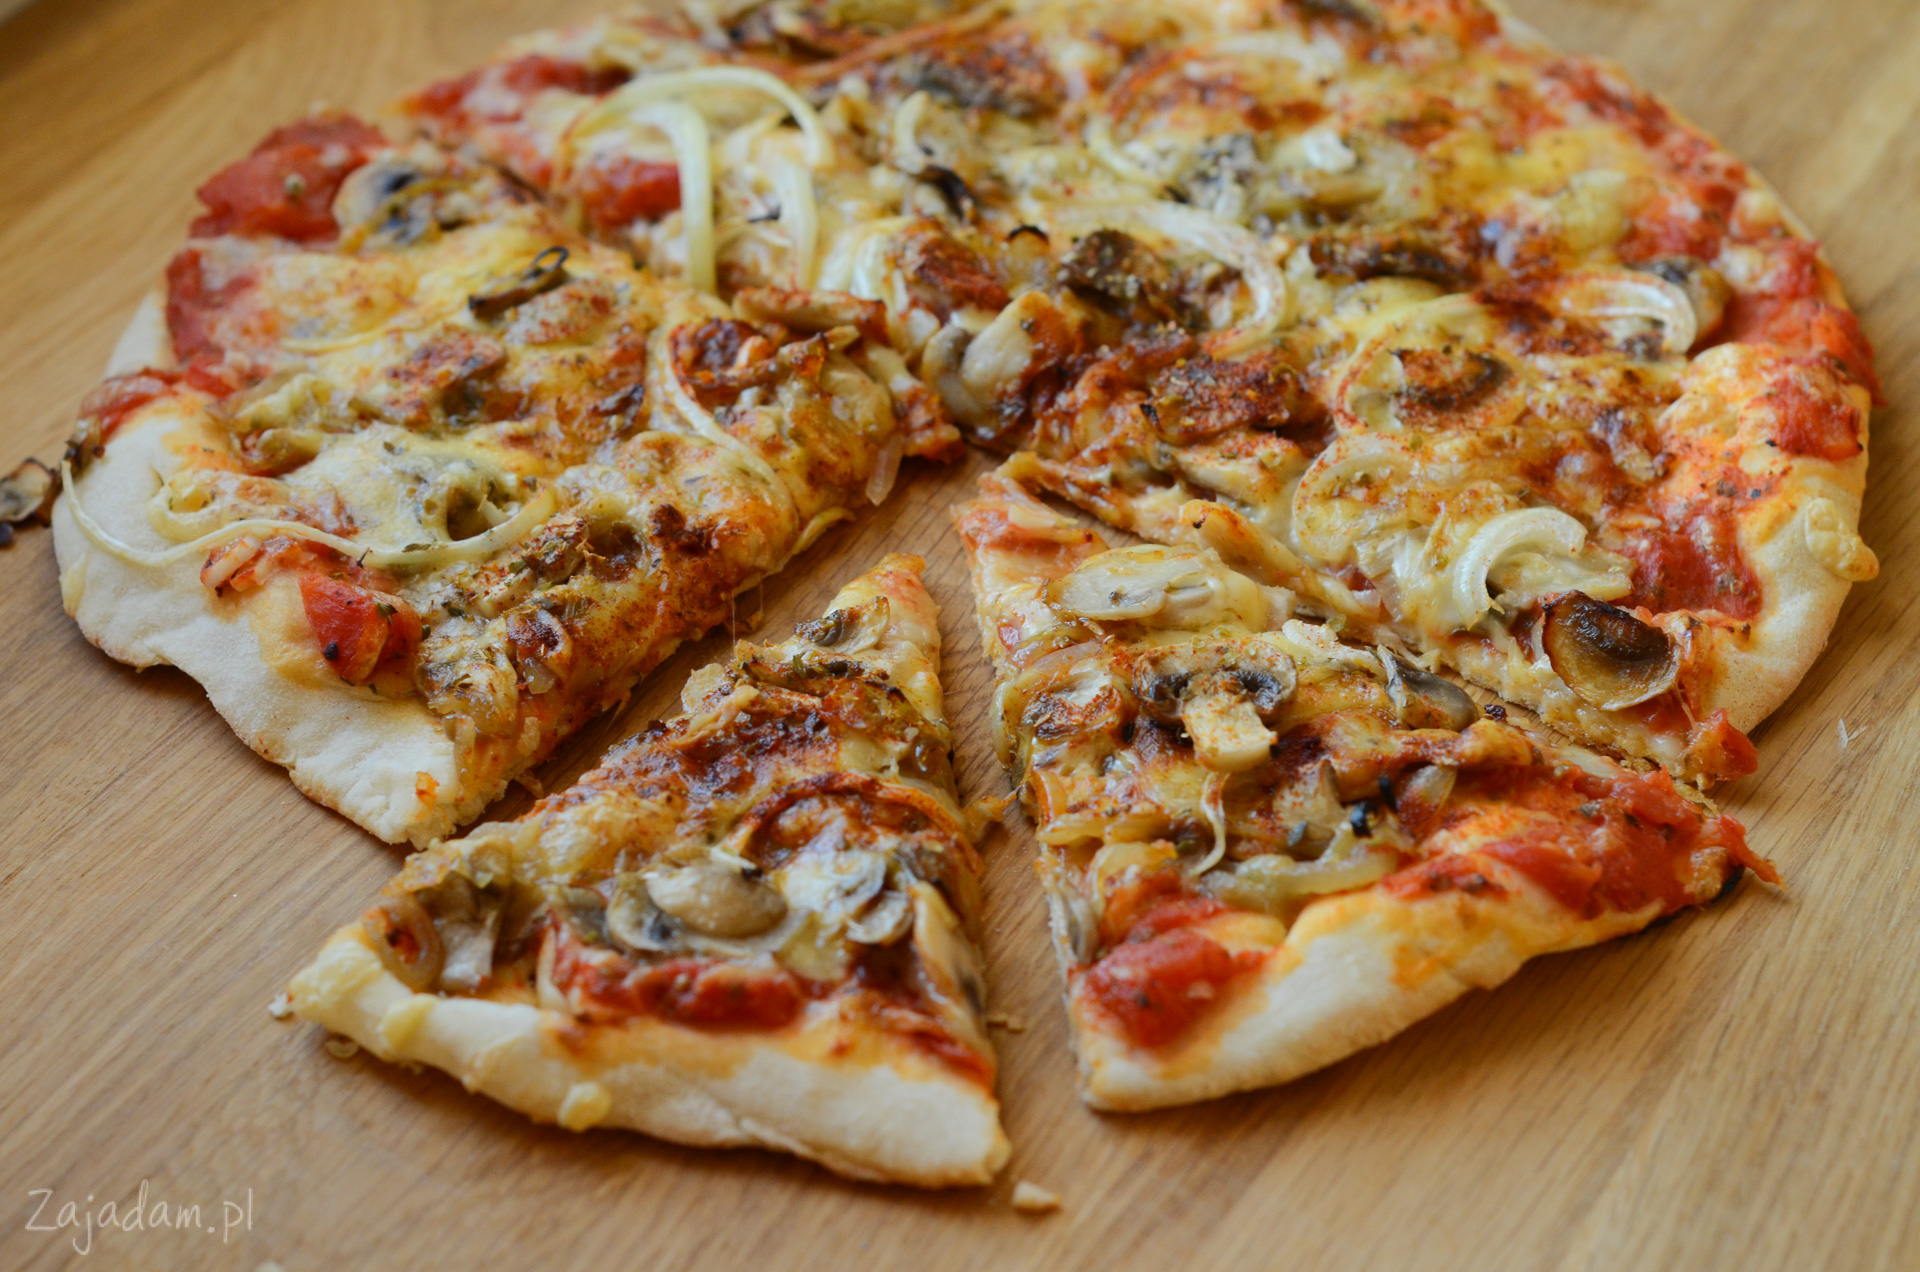 Пицца рецепт простой и вкусный в духовке. Пицца с грибами. Пицца домашняя. Пицца с грибами и колбасой. Пицца в духовке.